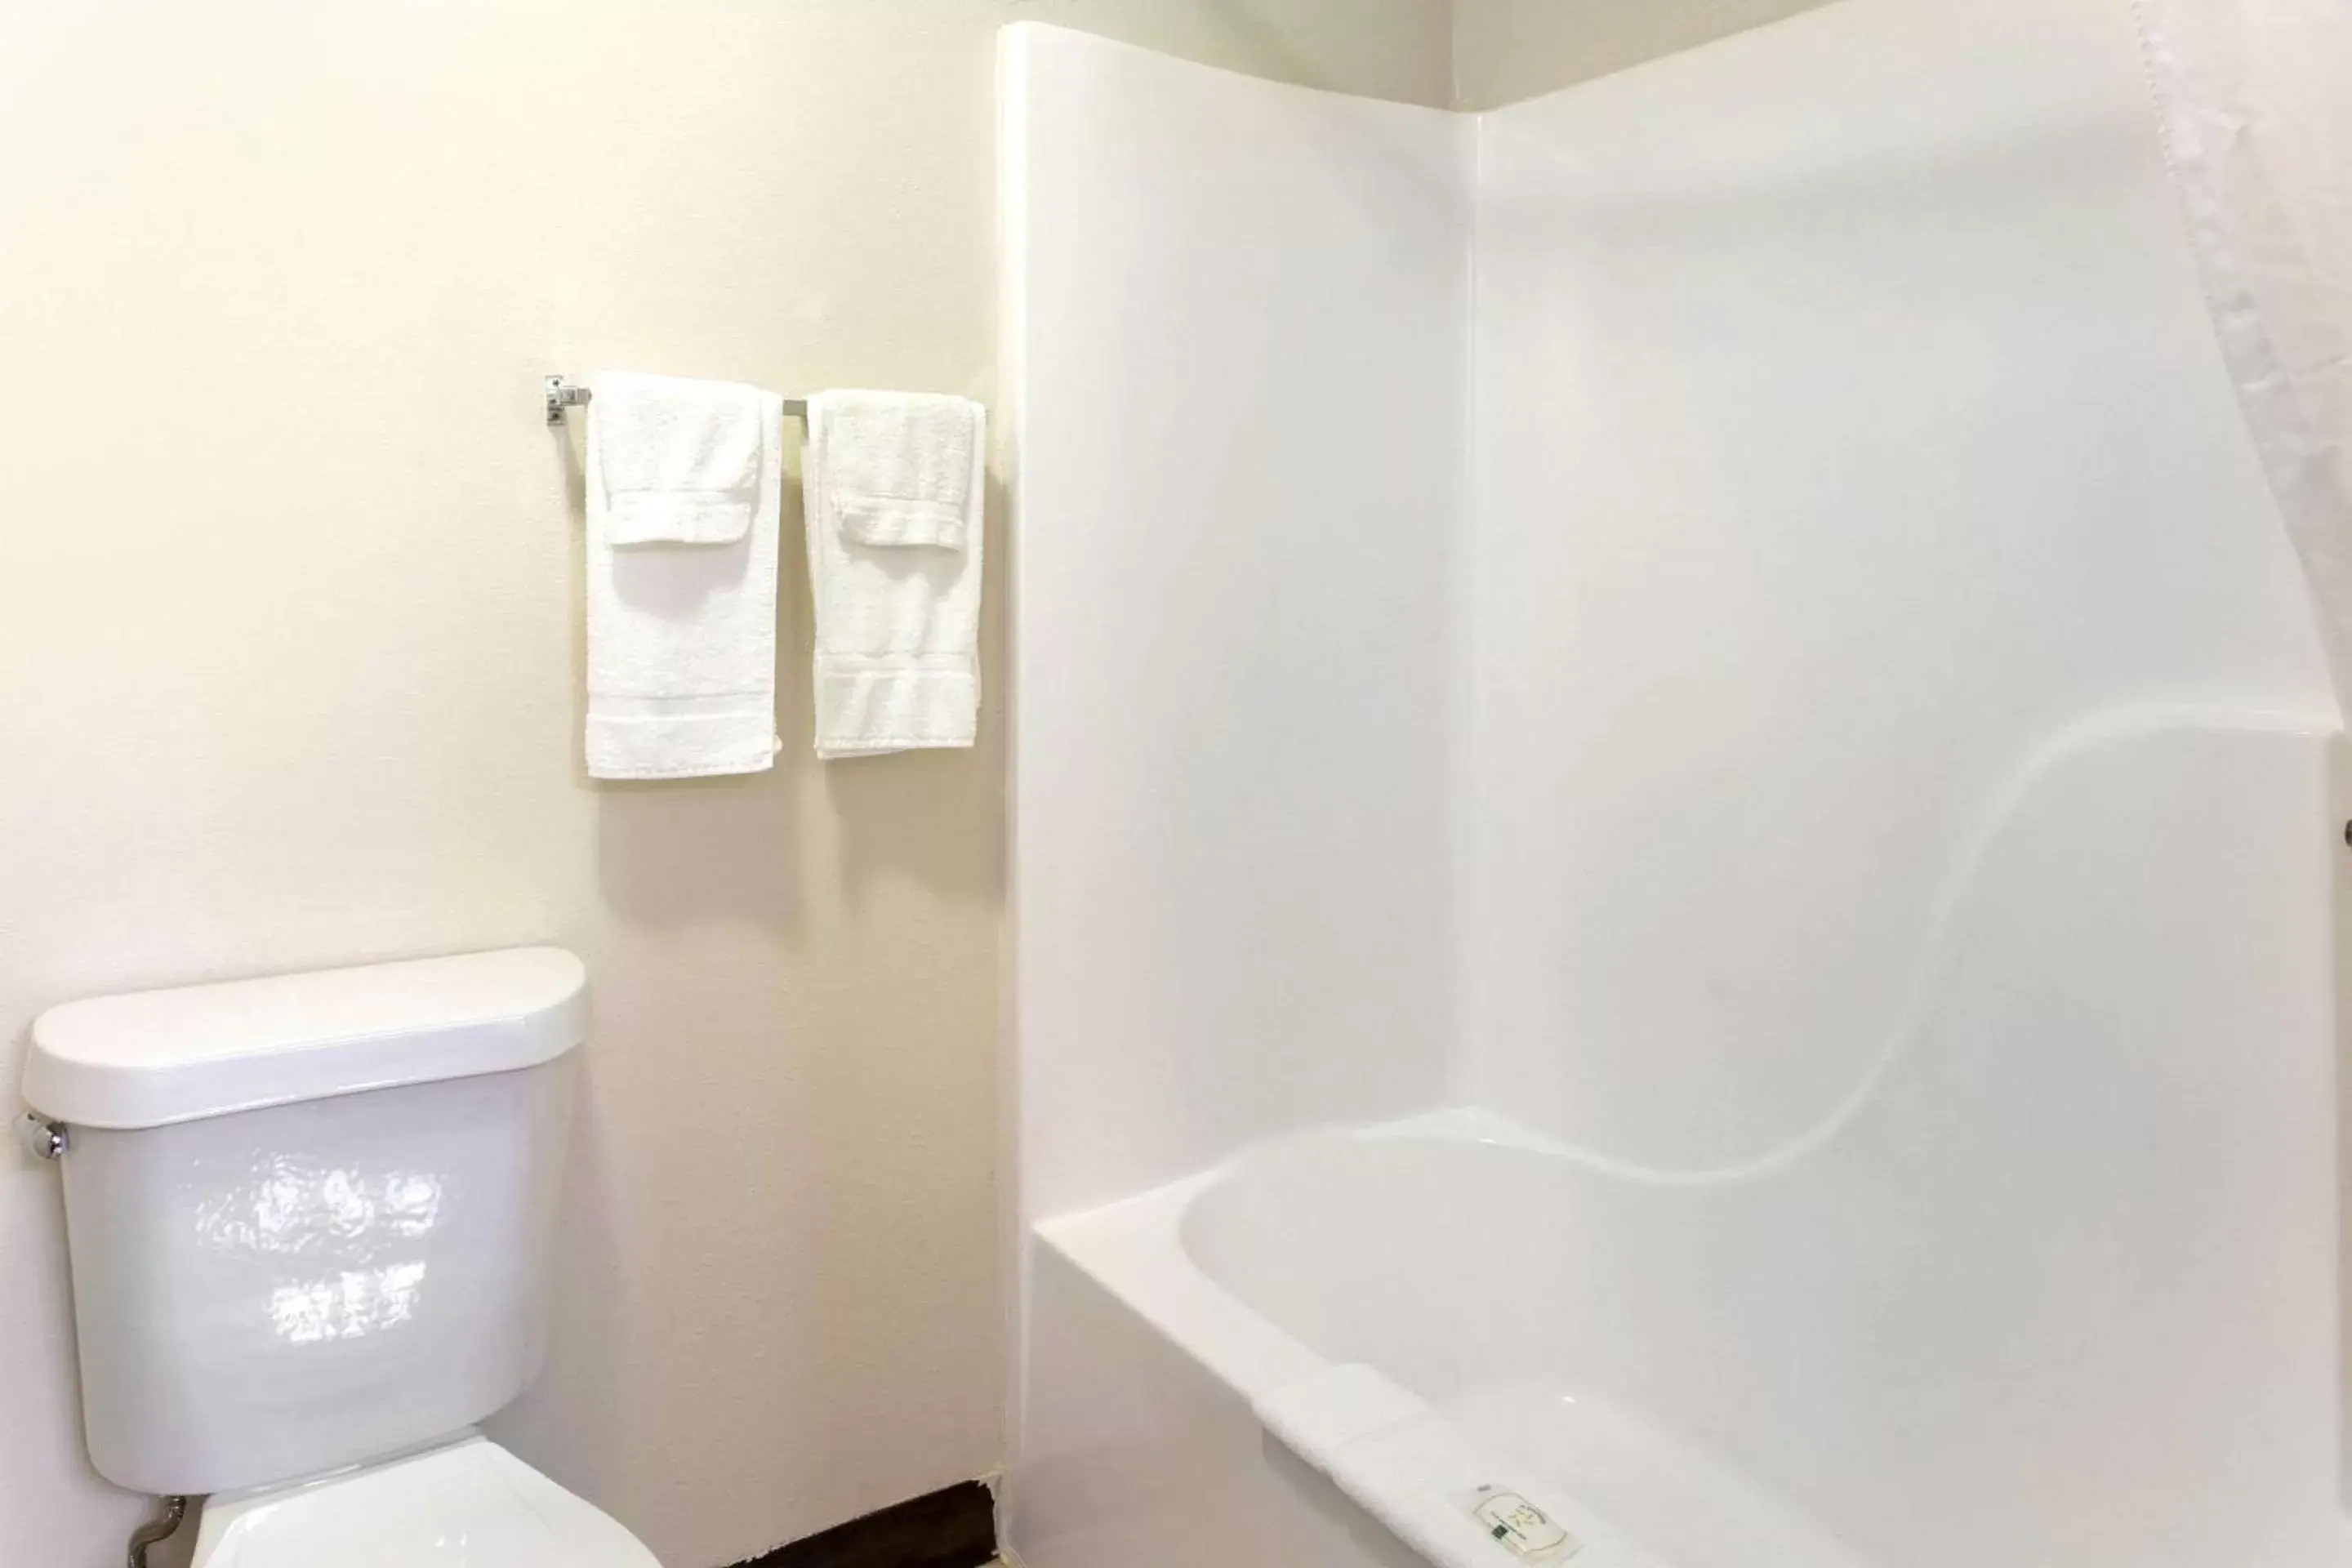 Bedroom, Bathroom in Quality Inn & Suites Metropolis I-24